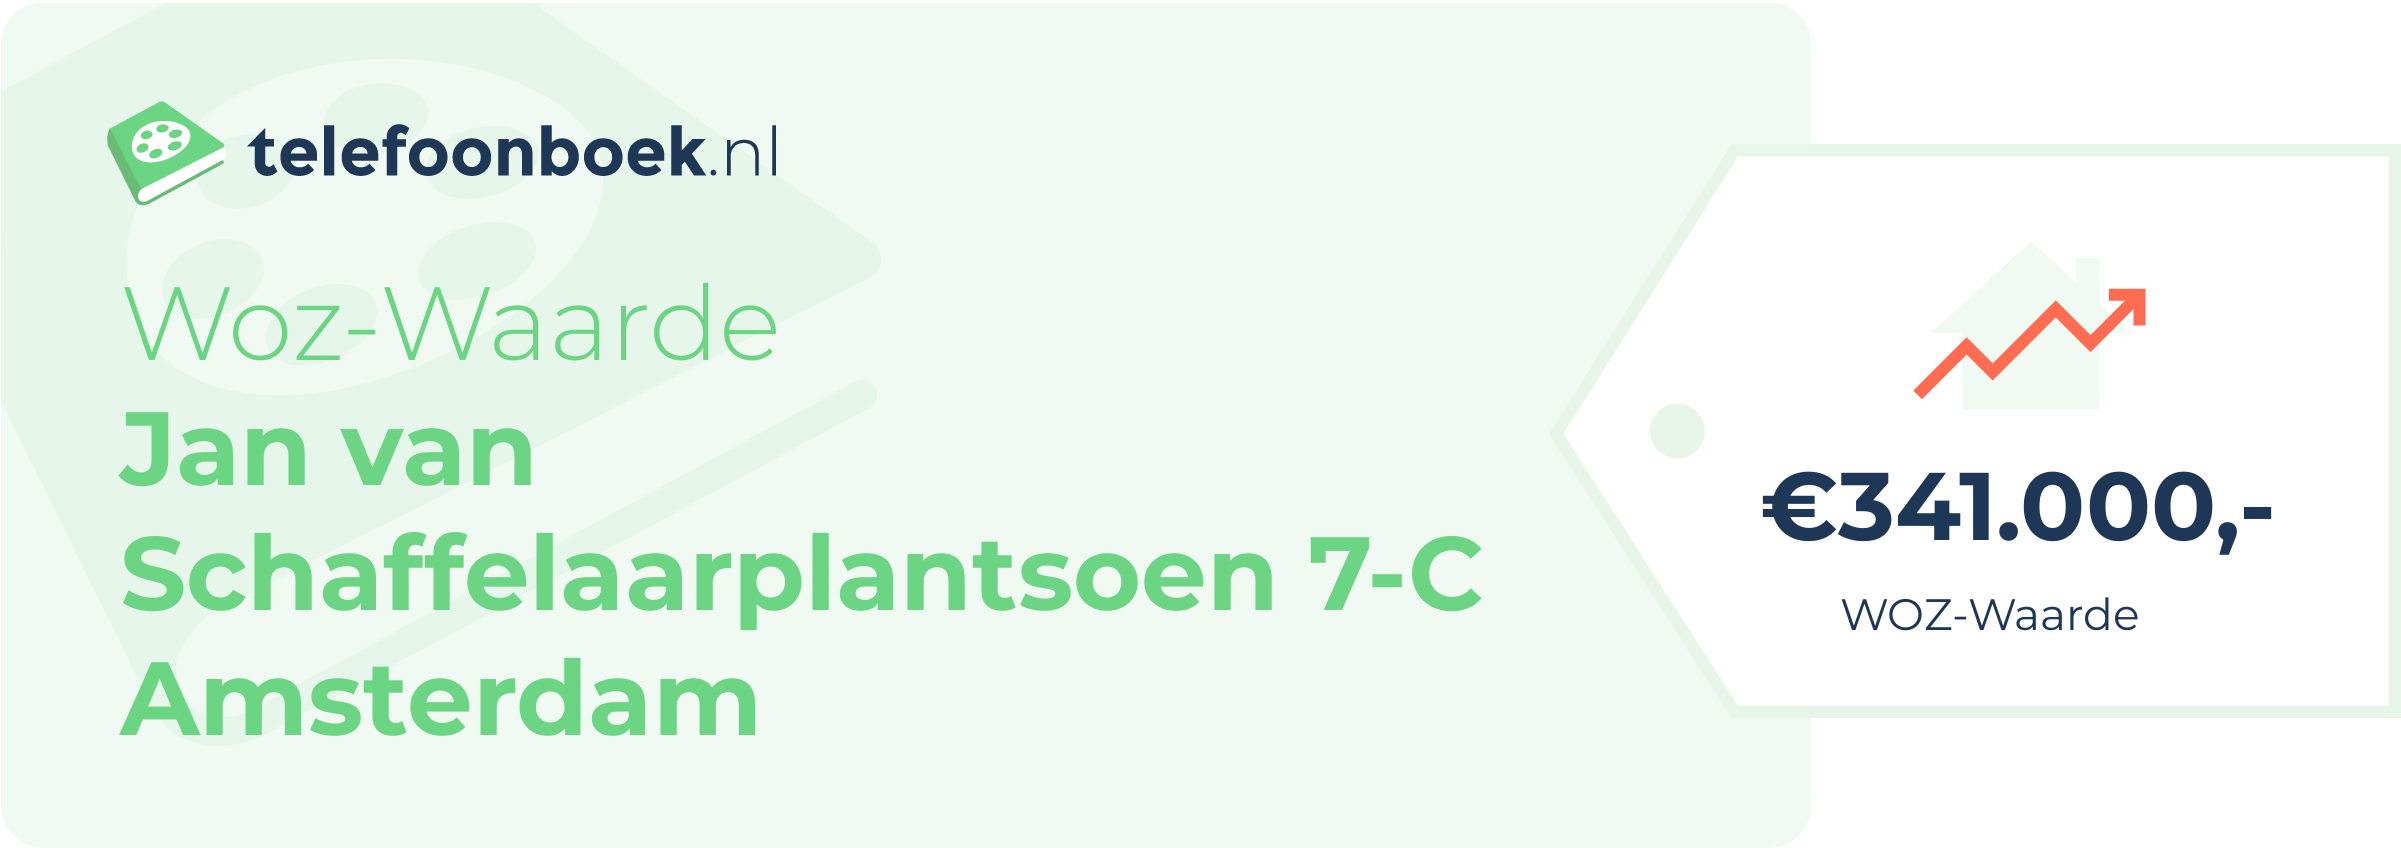 WOZ-waarde Jan Van Schaffelaarplantsoen 7-C Amsterdam